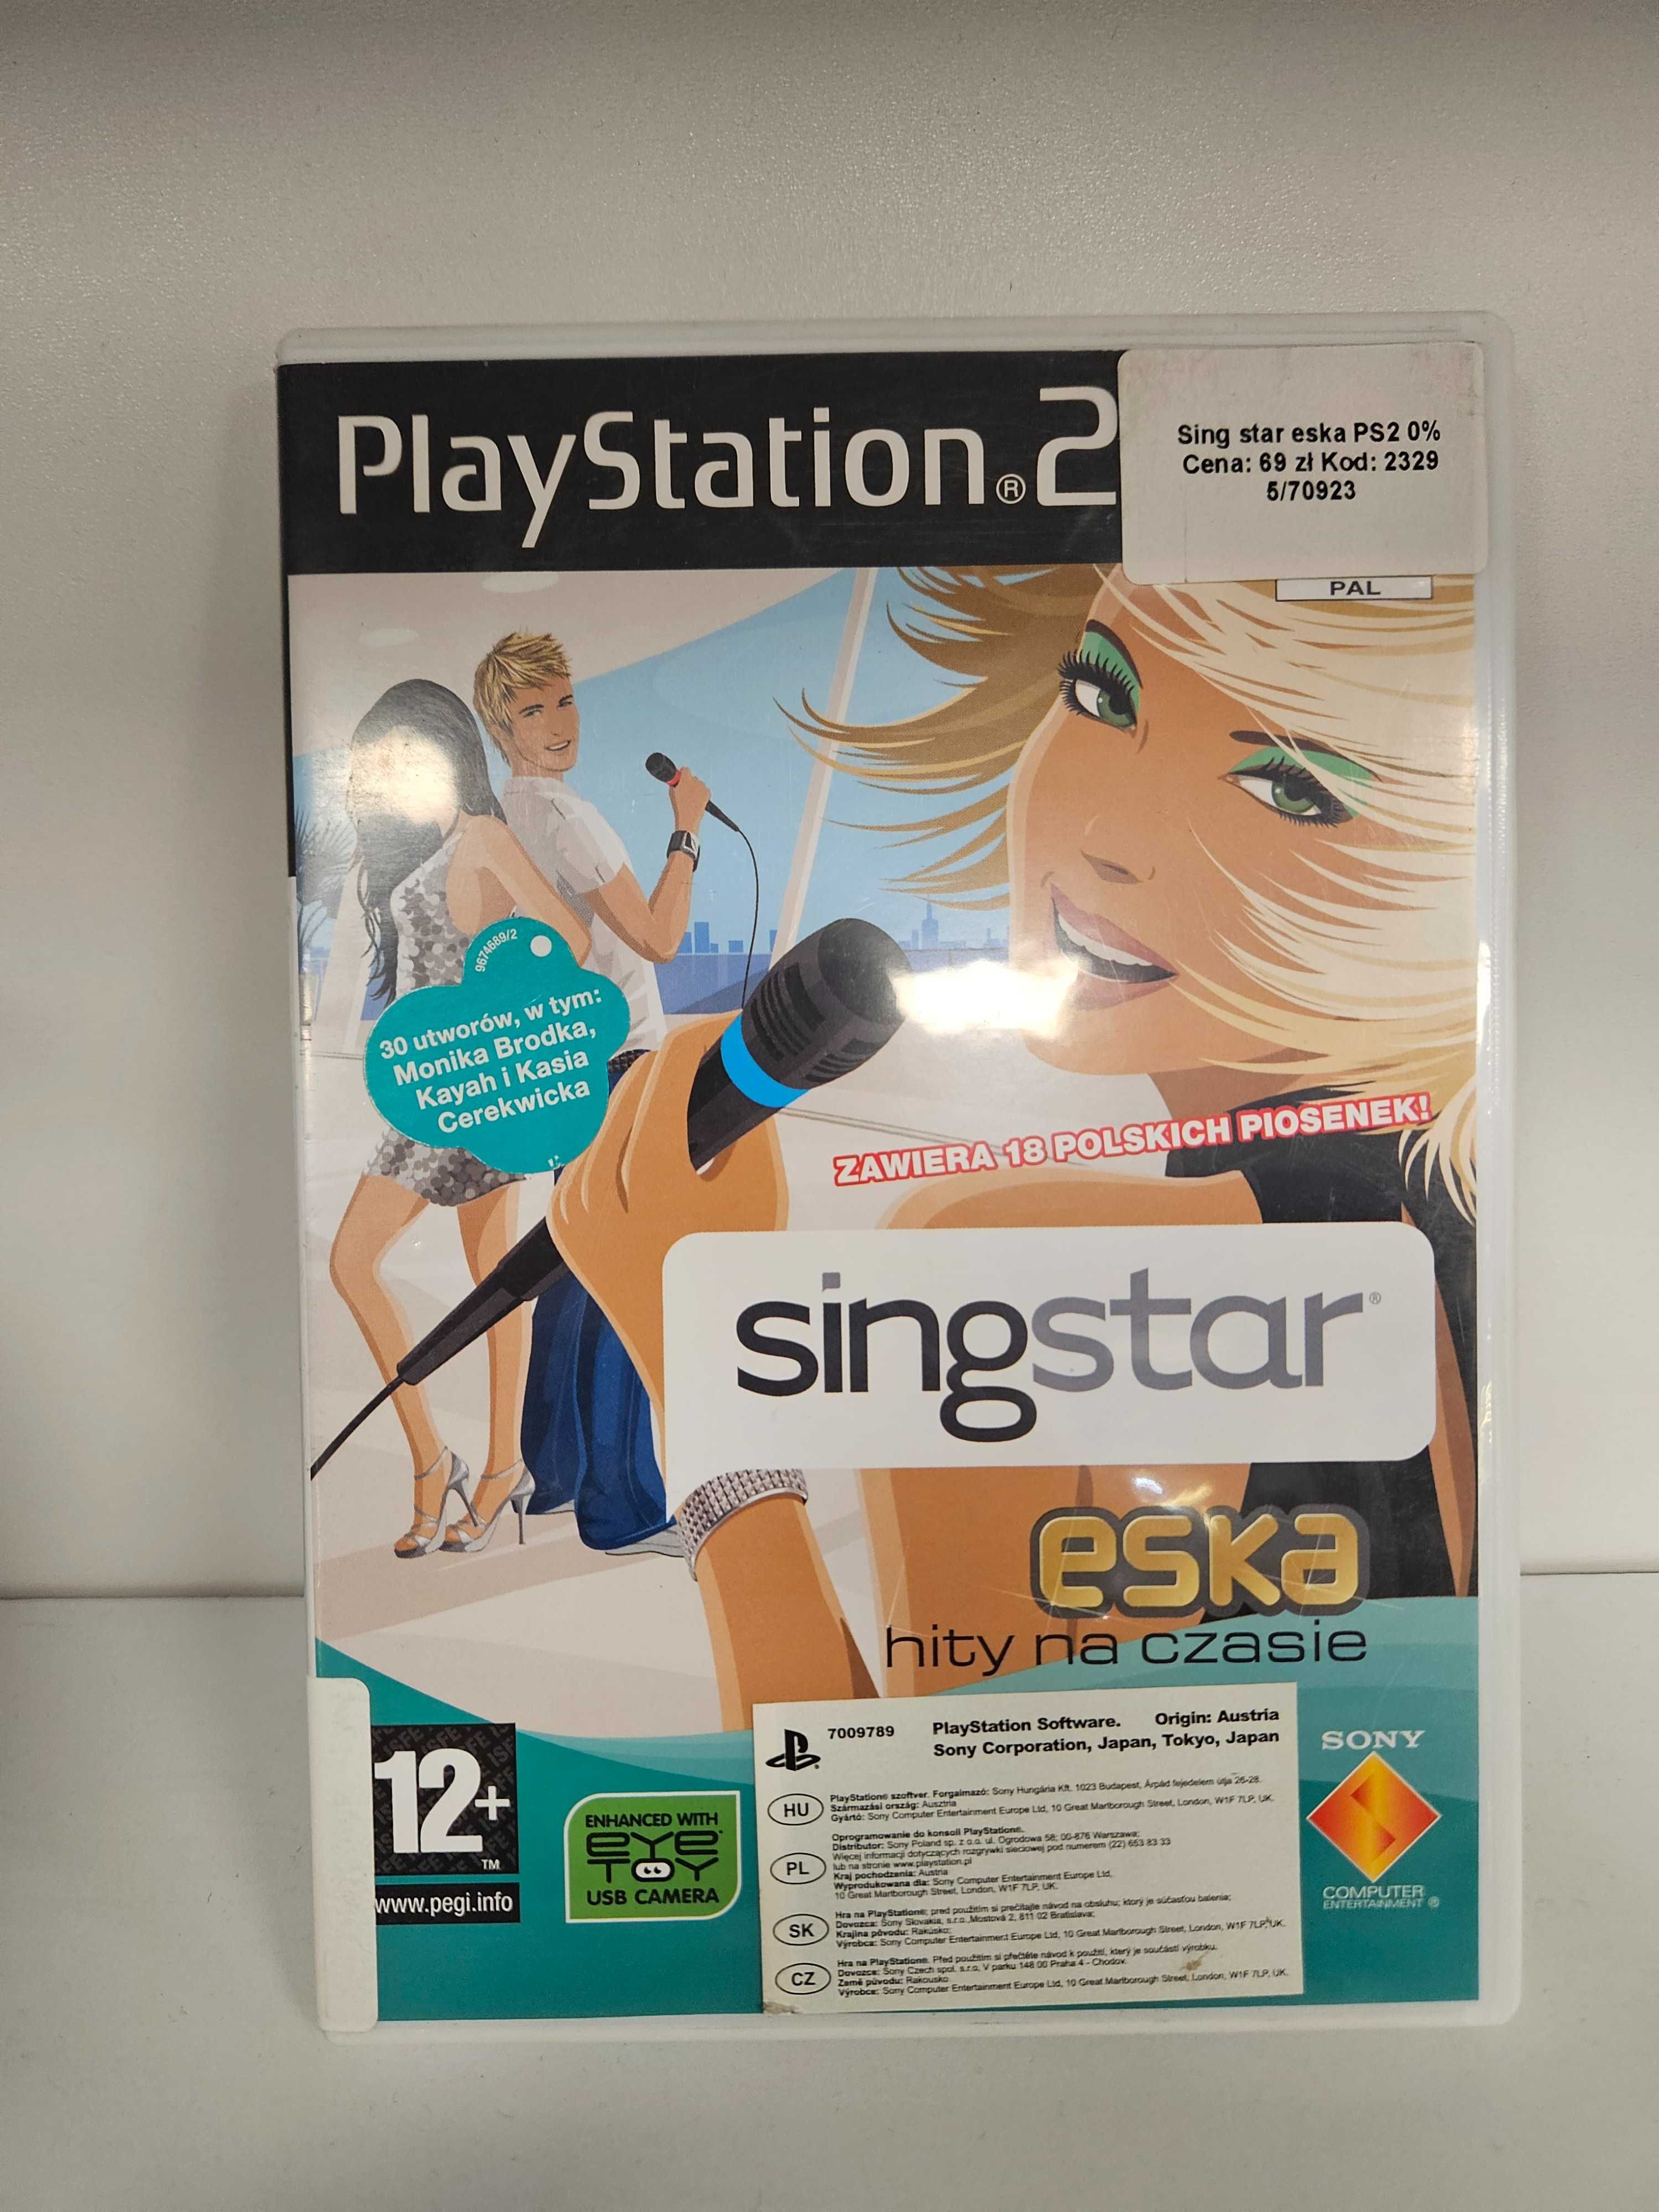 SingStar eska hity na czasie PS2 - As Game & GSM 2329